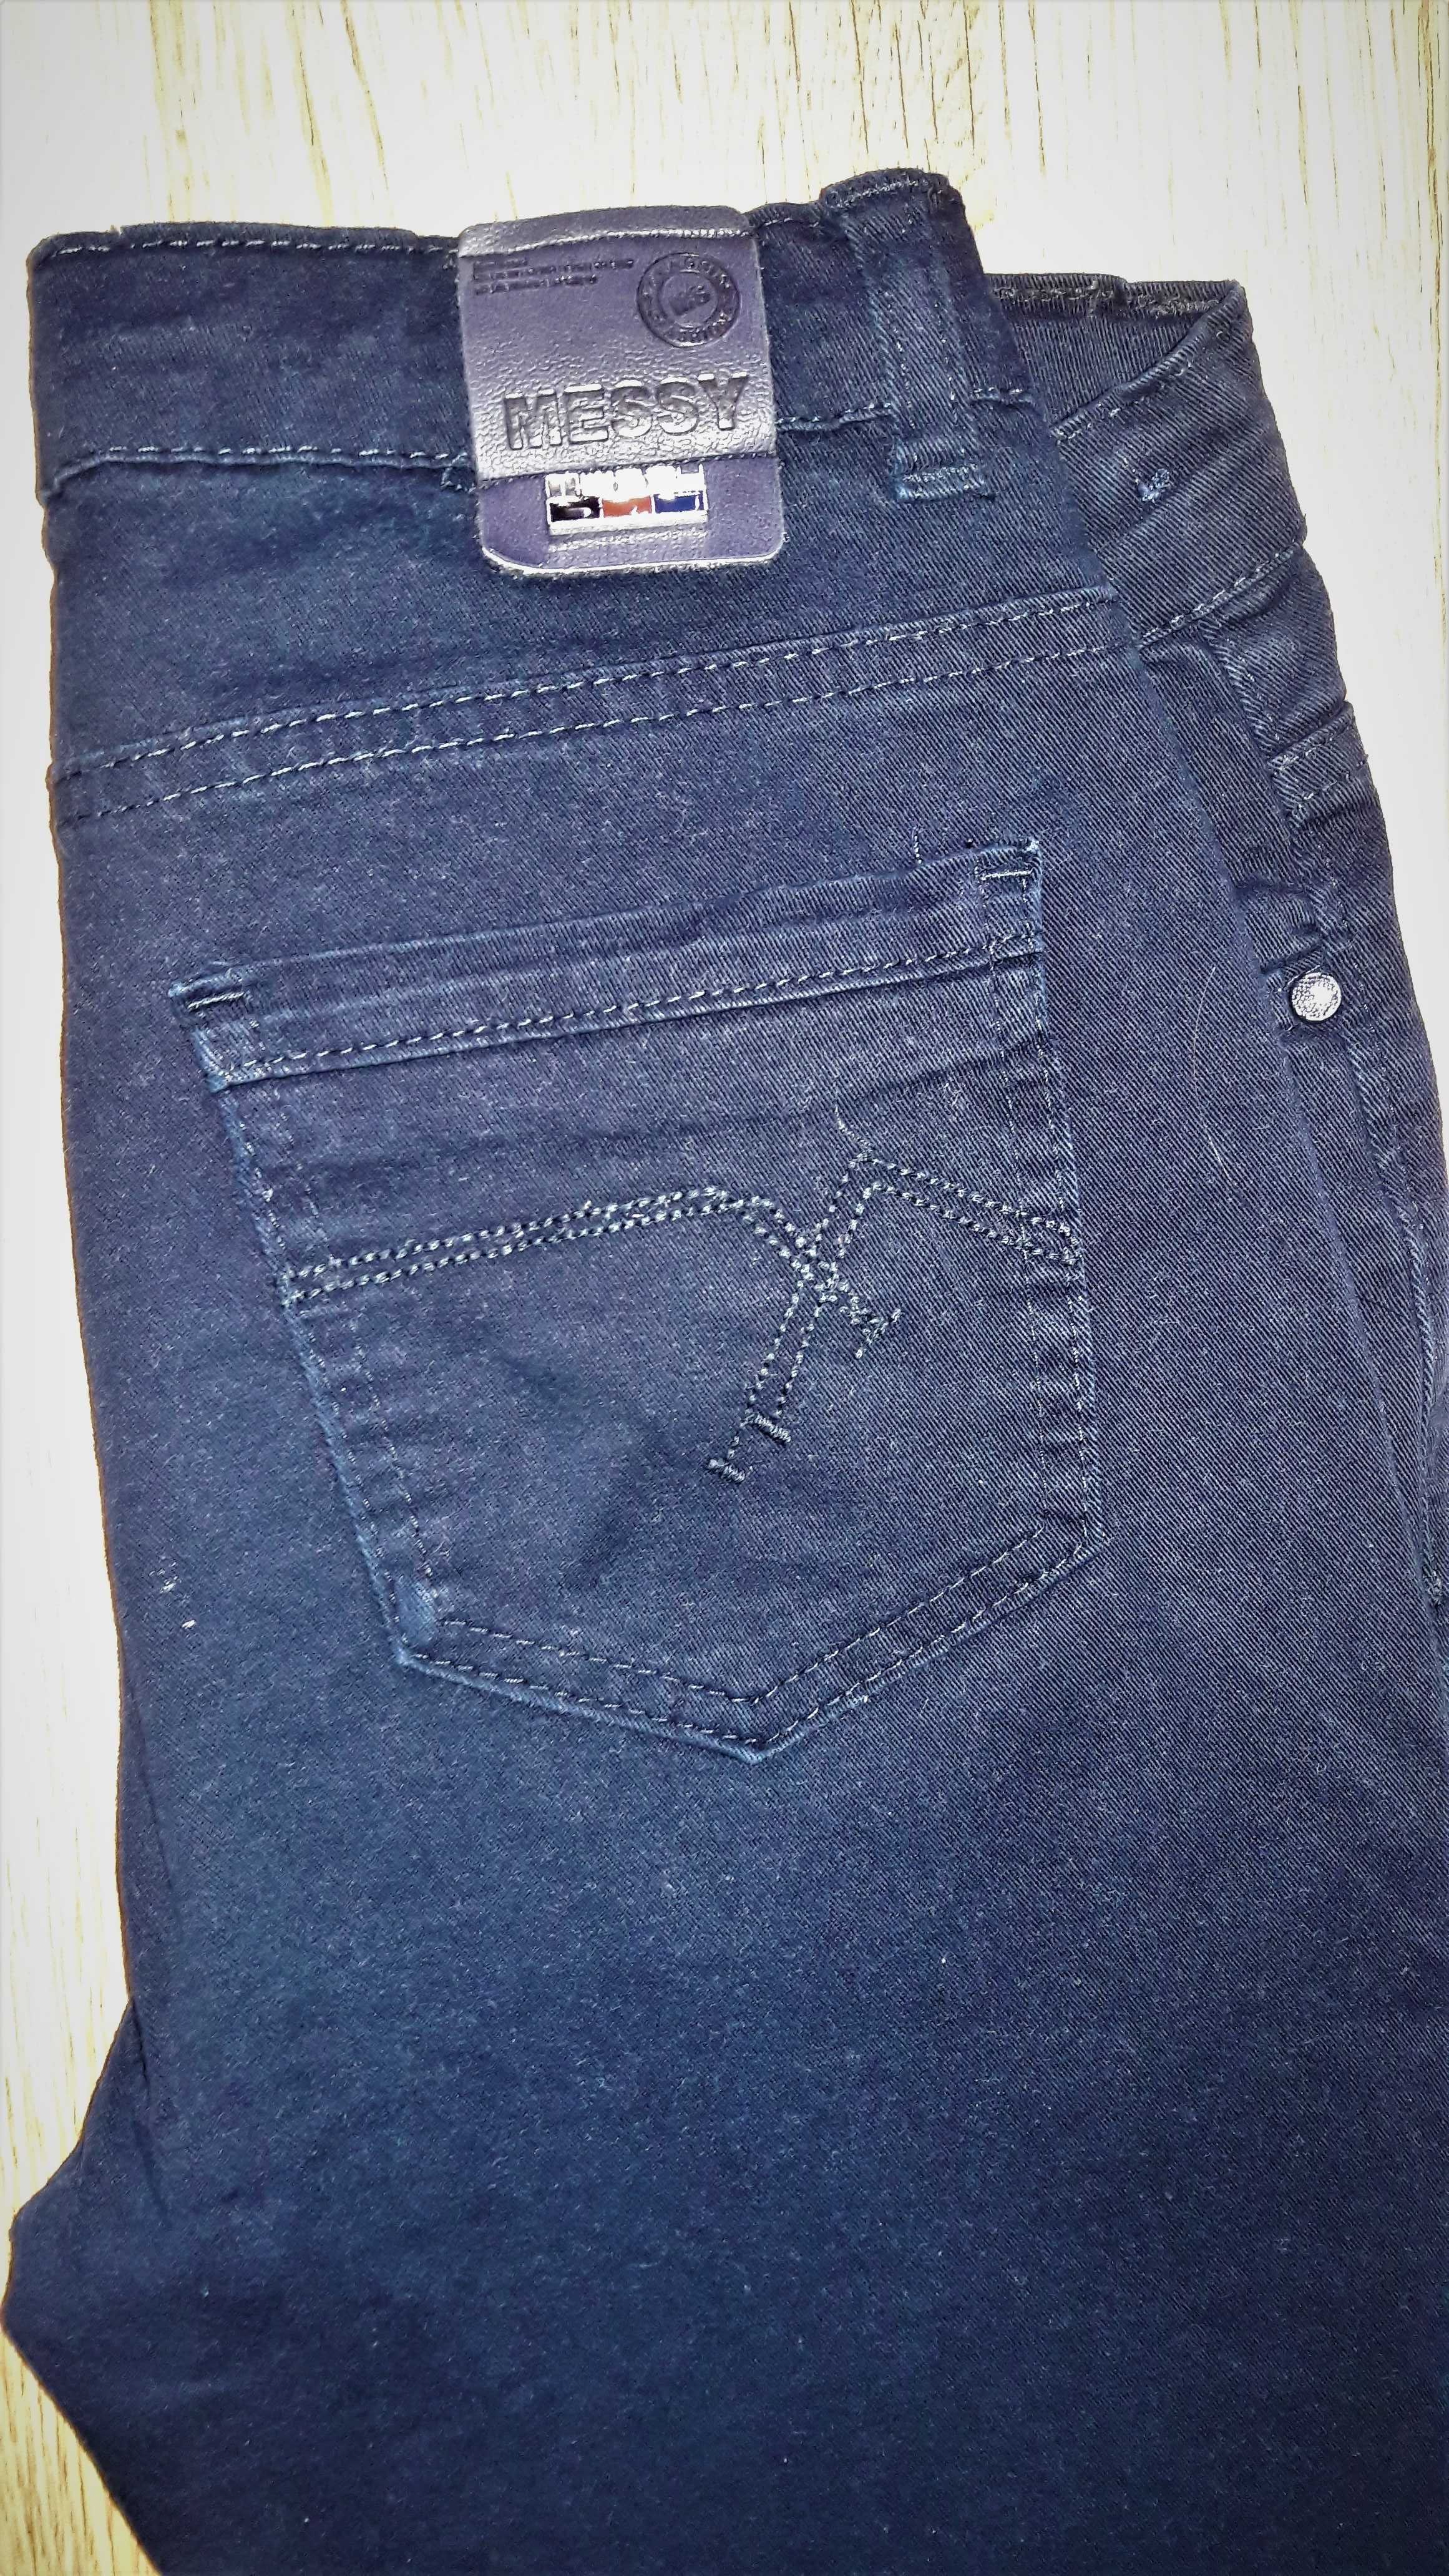 Брюки, джинсы, школьные штаны на мальчика 12-13лет